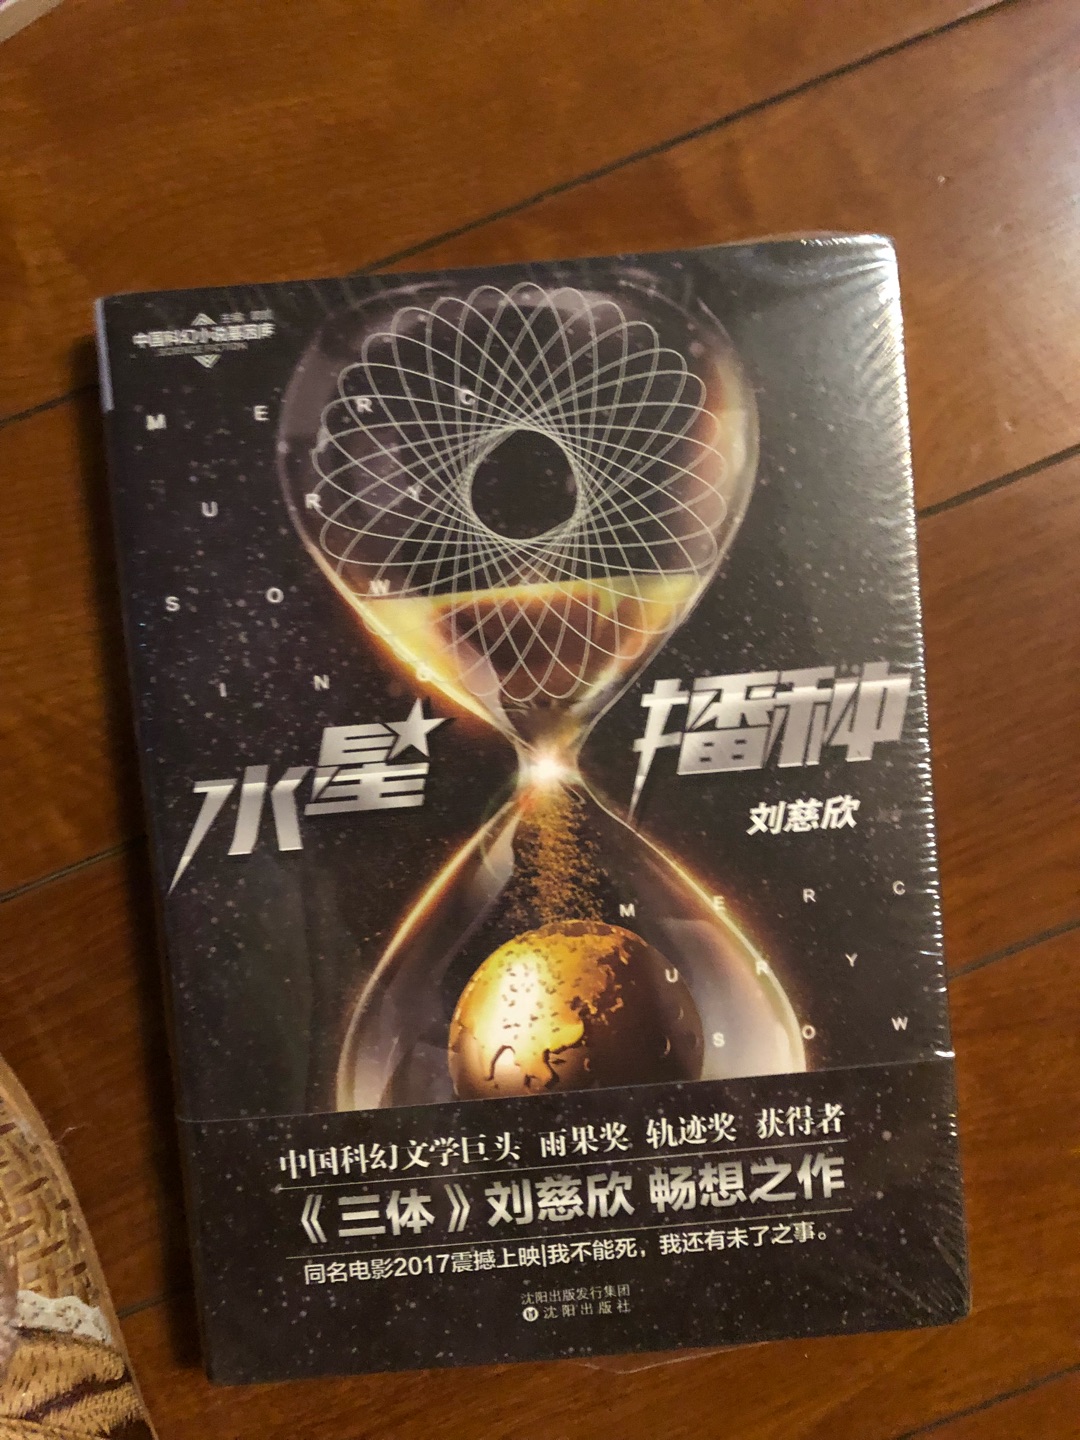 大刘的科幻喜欢很久了。趁这次买一本。